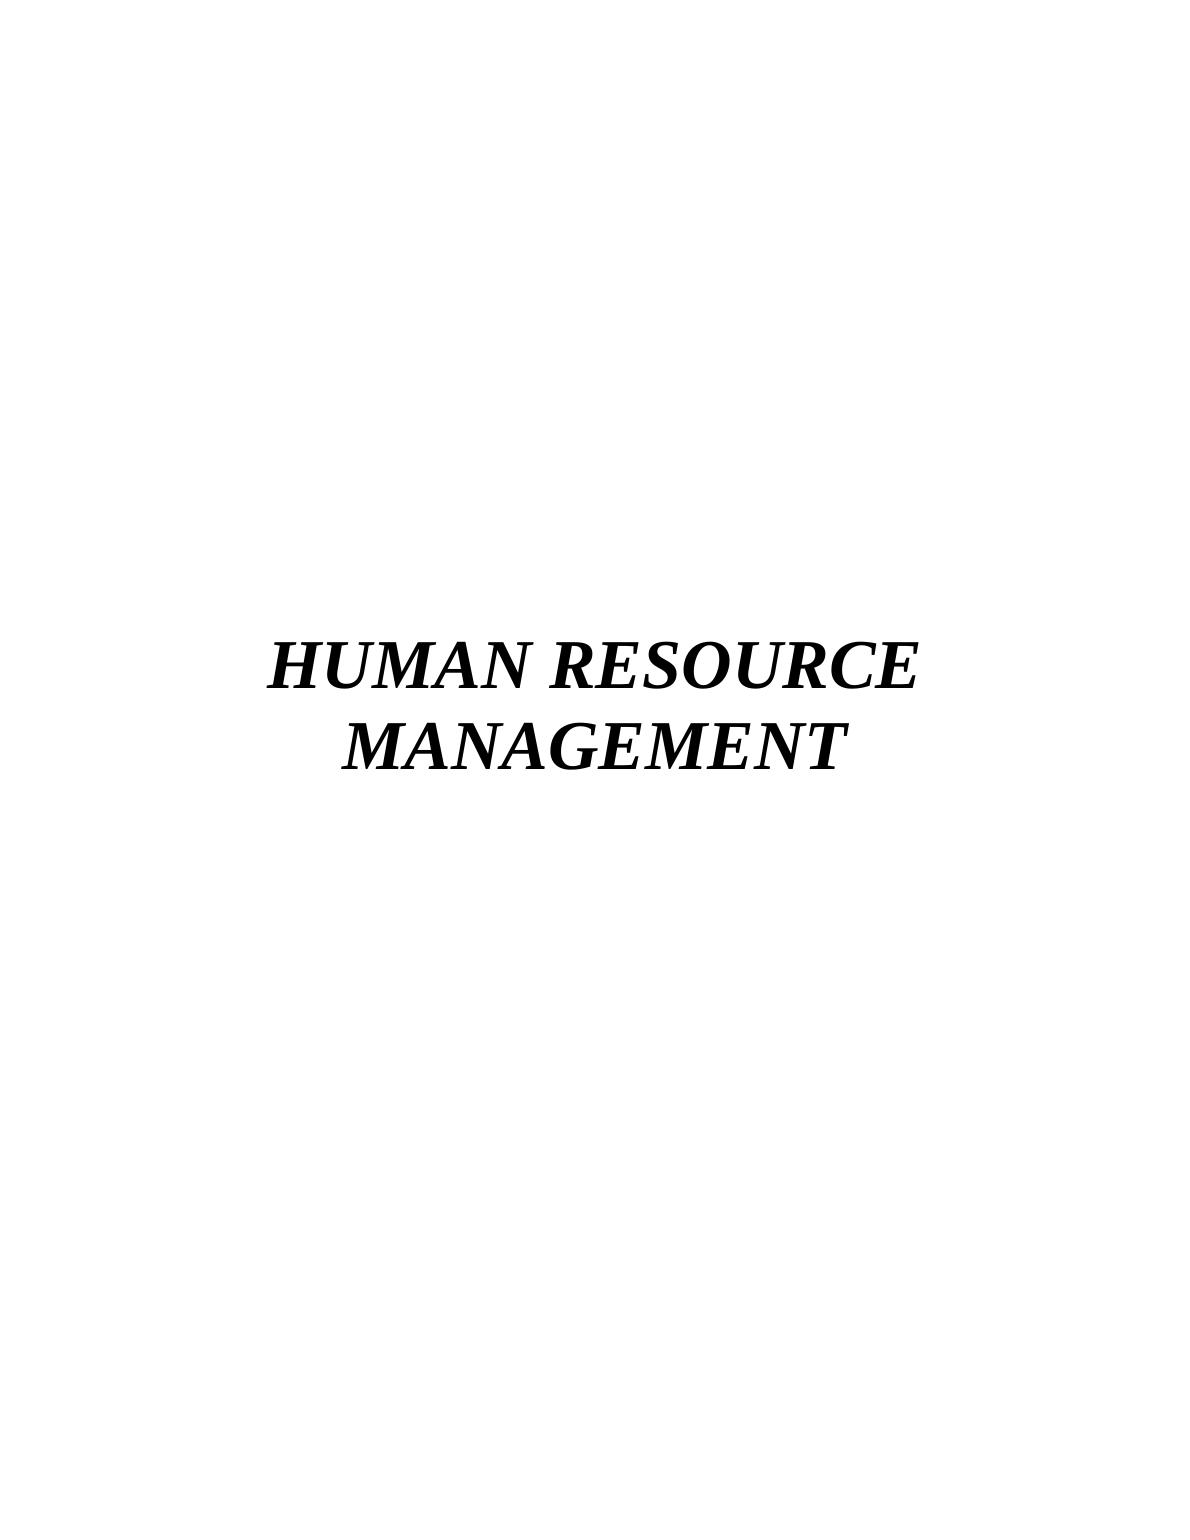 Human Resource Management Assignment - JP Morgan Firm_1